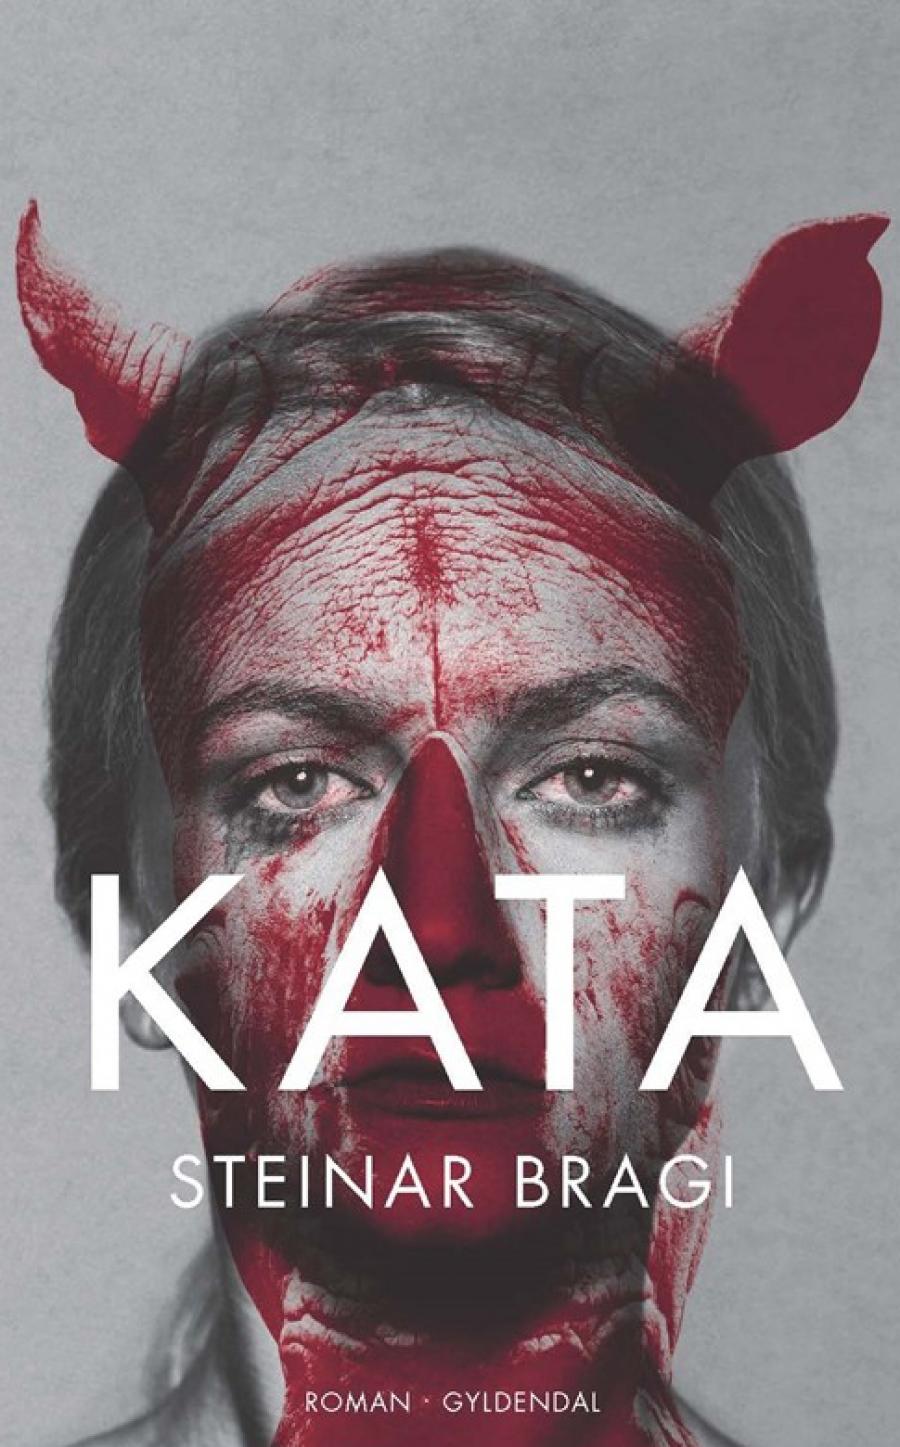 Forsiden på "Kata" af Steinar Bragi